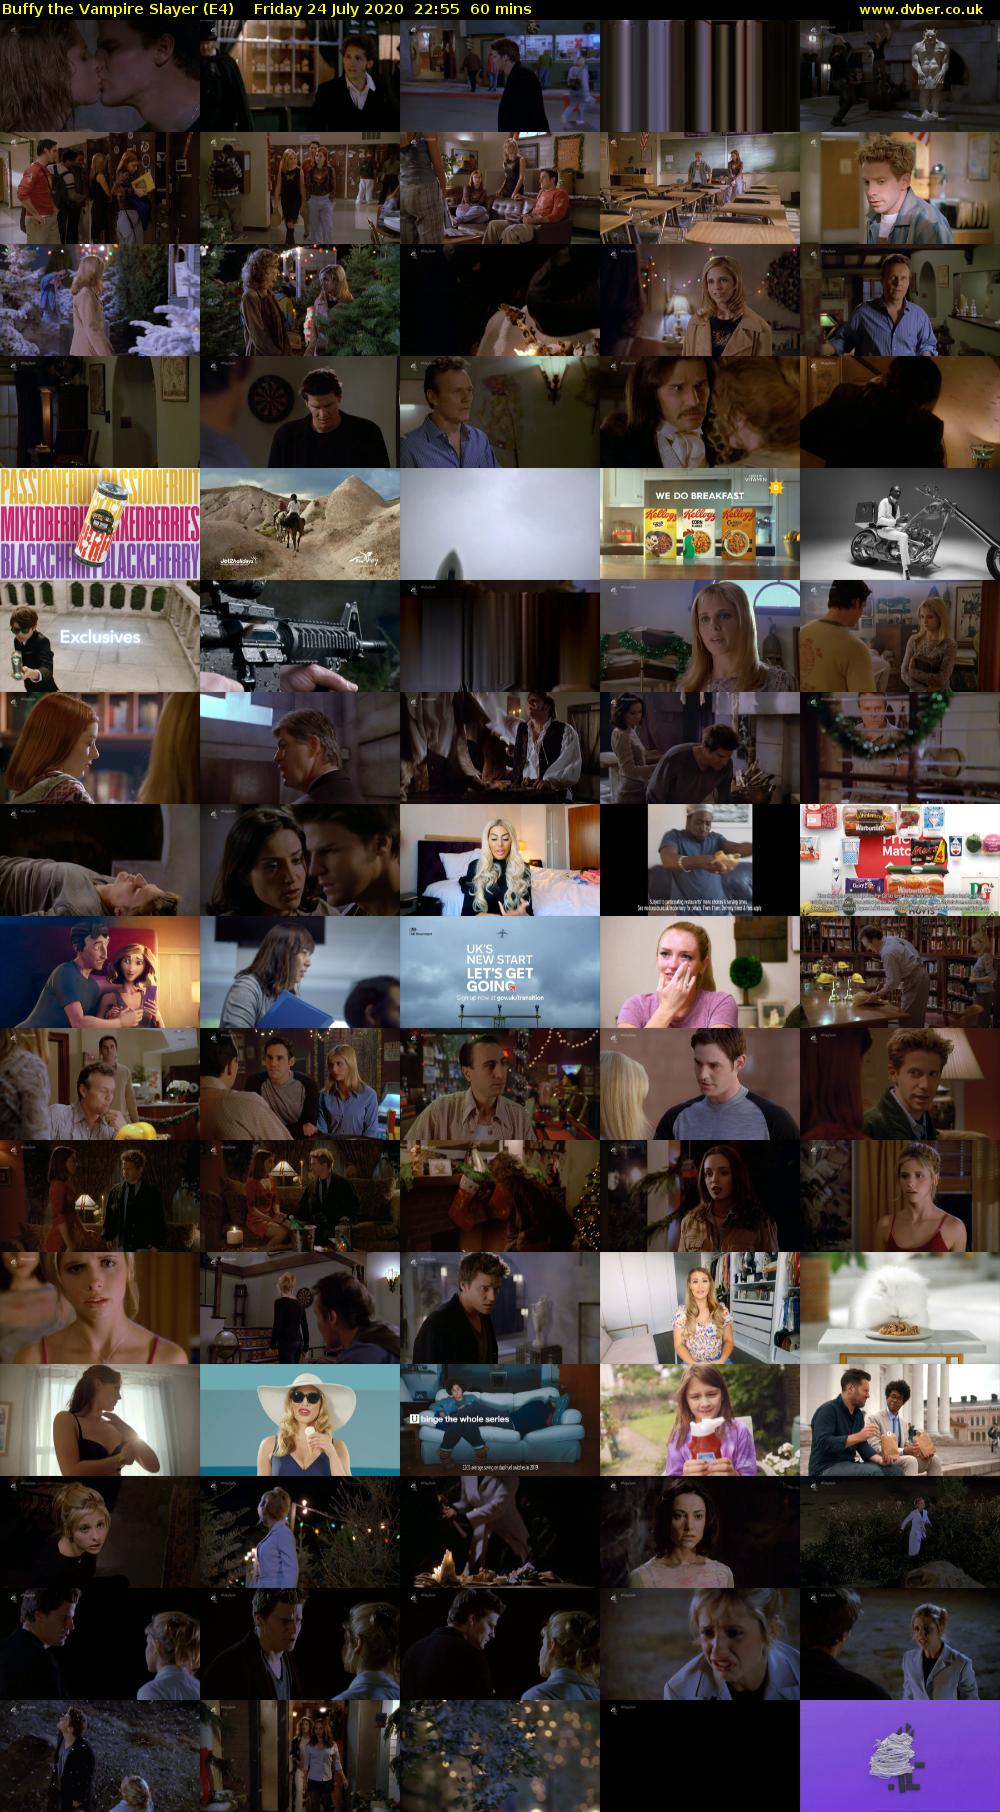 Buffy the Vampire Slayer (E4) Friday 24 July 2020 22:55 - 23:55